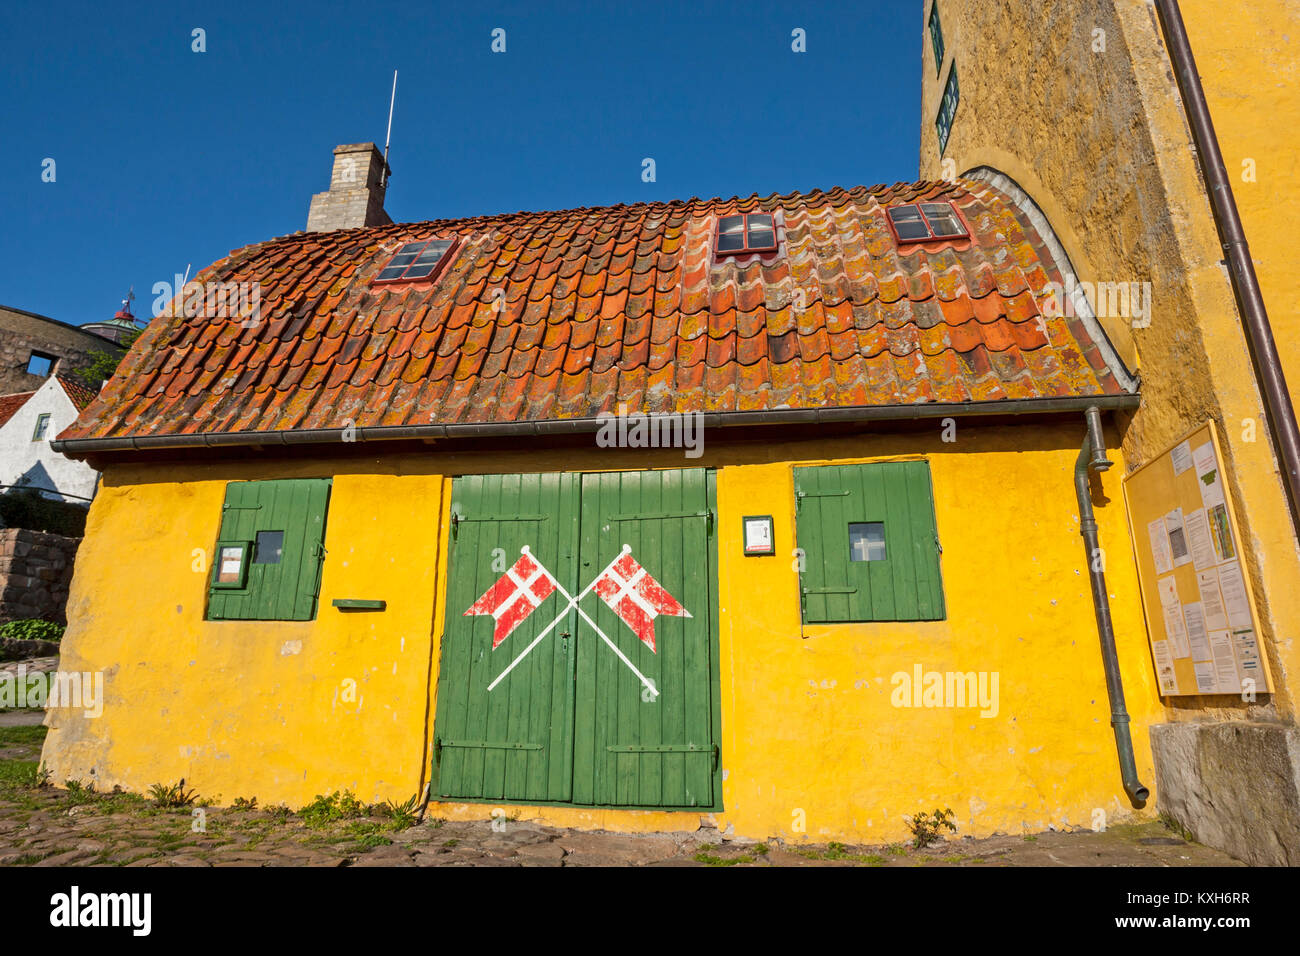 Green gate, Danish flags, curved roof with red tiles on the Bohlendachhuset, Christiansø, Ertholmene, Bornholm, Denmark Stock Photo